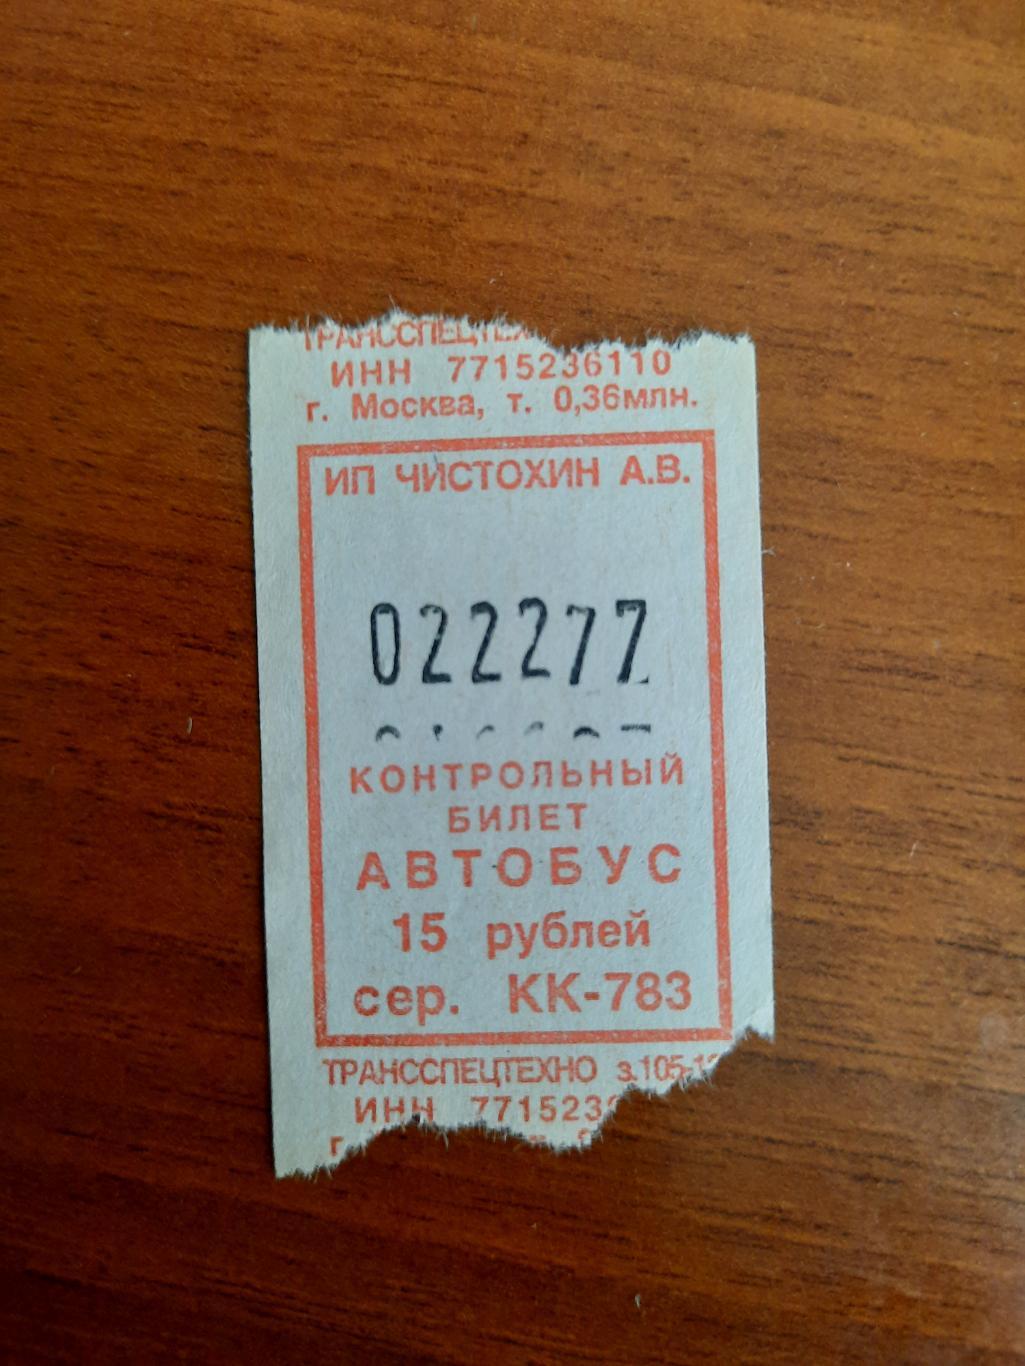 Автобусный билет с интересным номером 022277